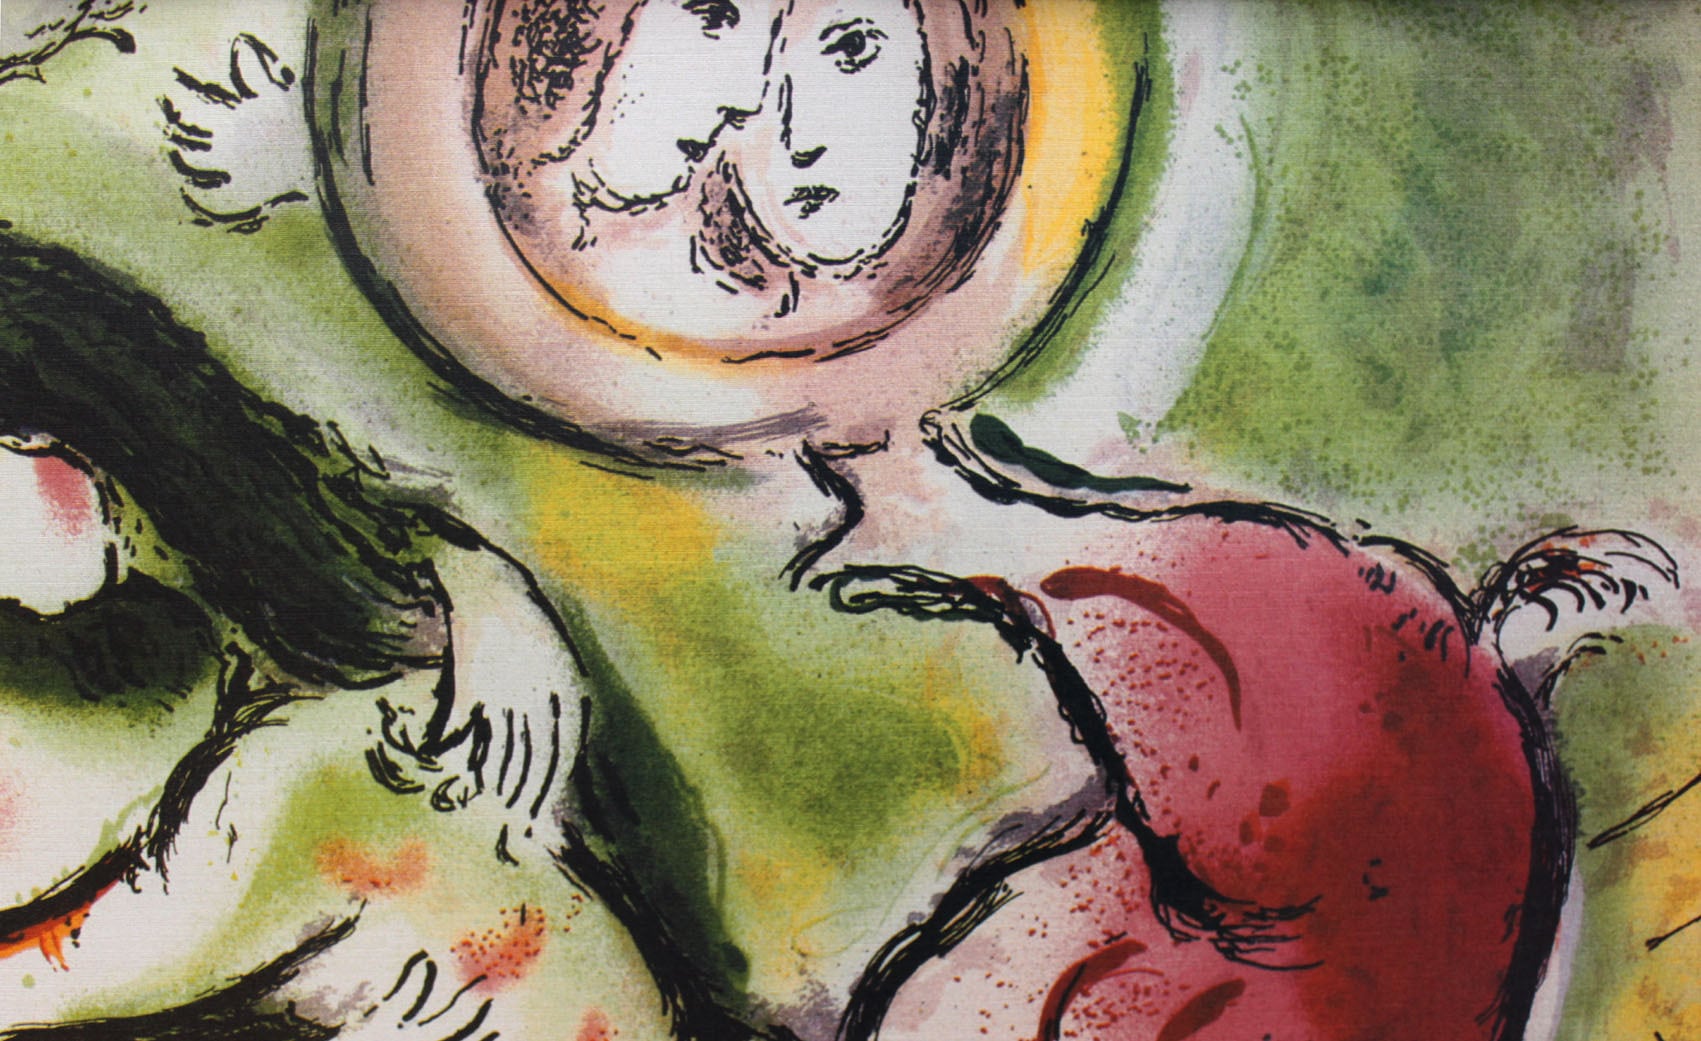 マルク・シャガール作品「ロミオとジュリエット」作品証明書・展示用フック・限定500部エディション付複製画リトグラ